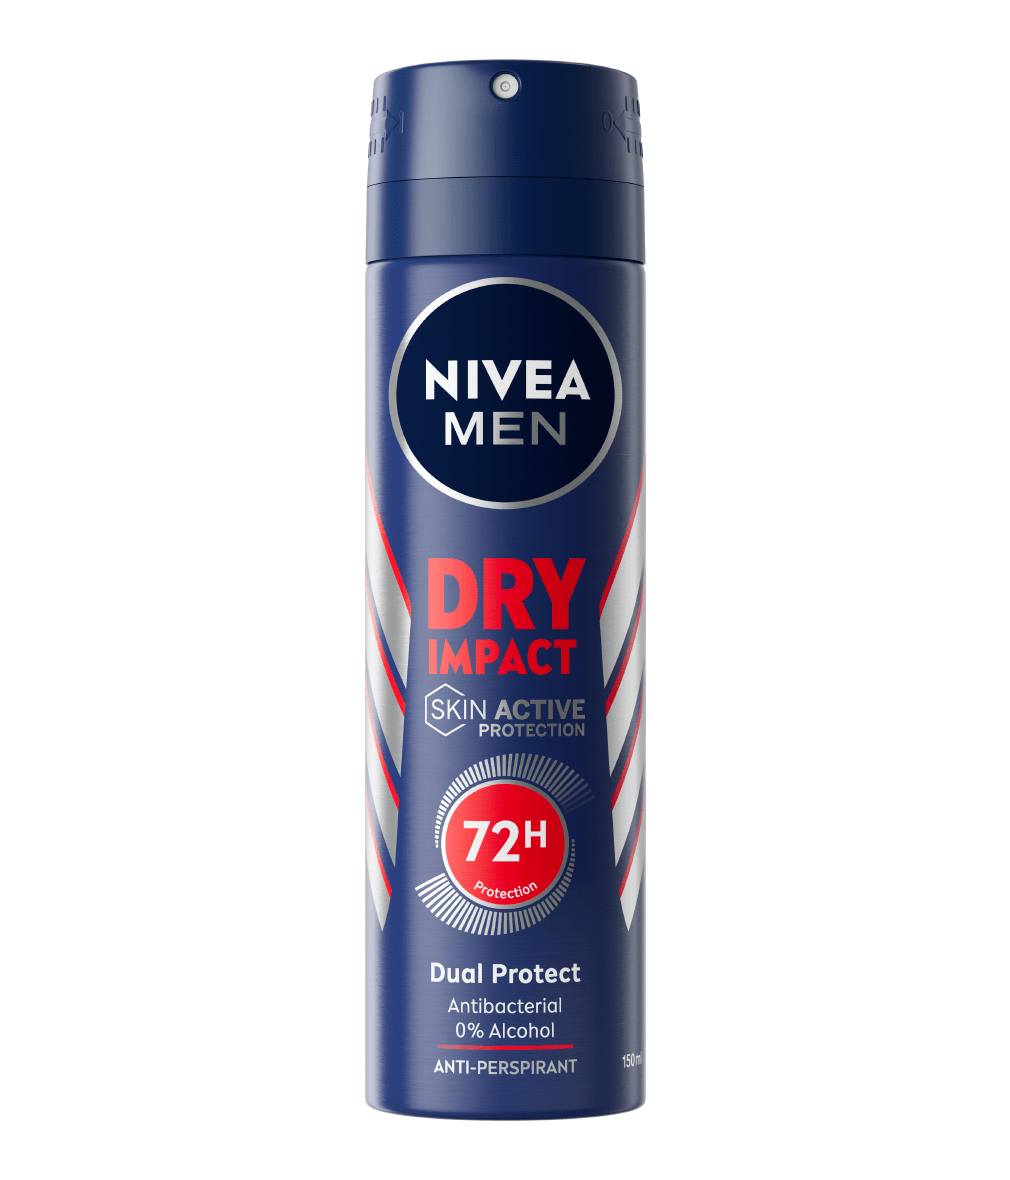 Acquista 2 deodoranti Nivea e richiedi una borraccia filtrante